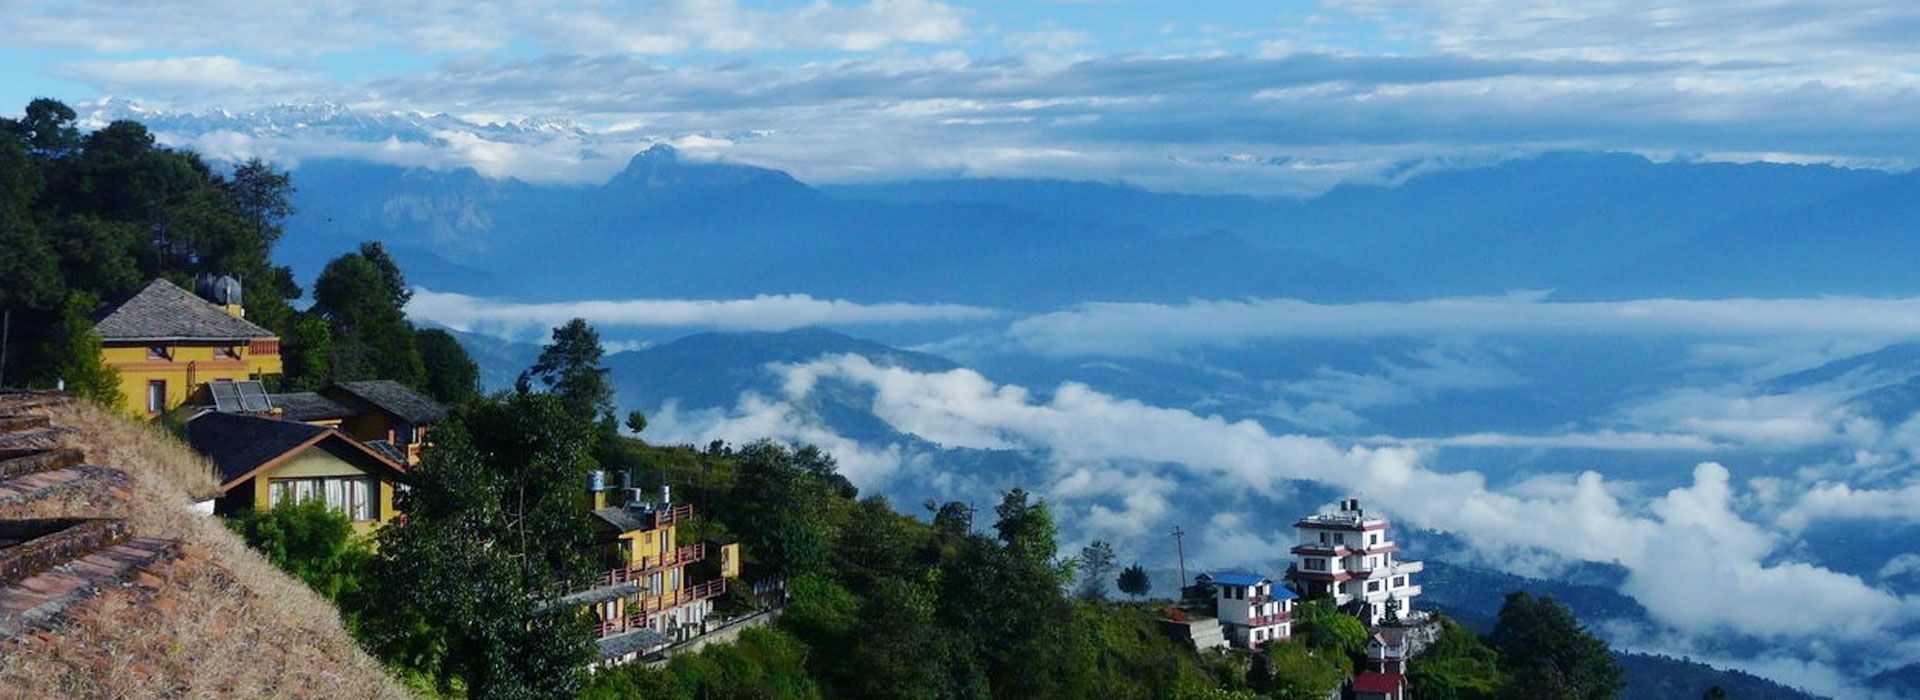 views of Himalayas from Nagarkot, Nepal